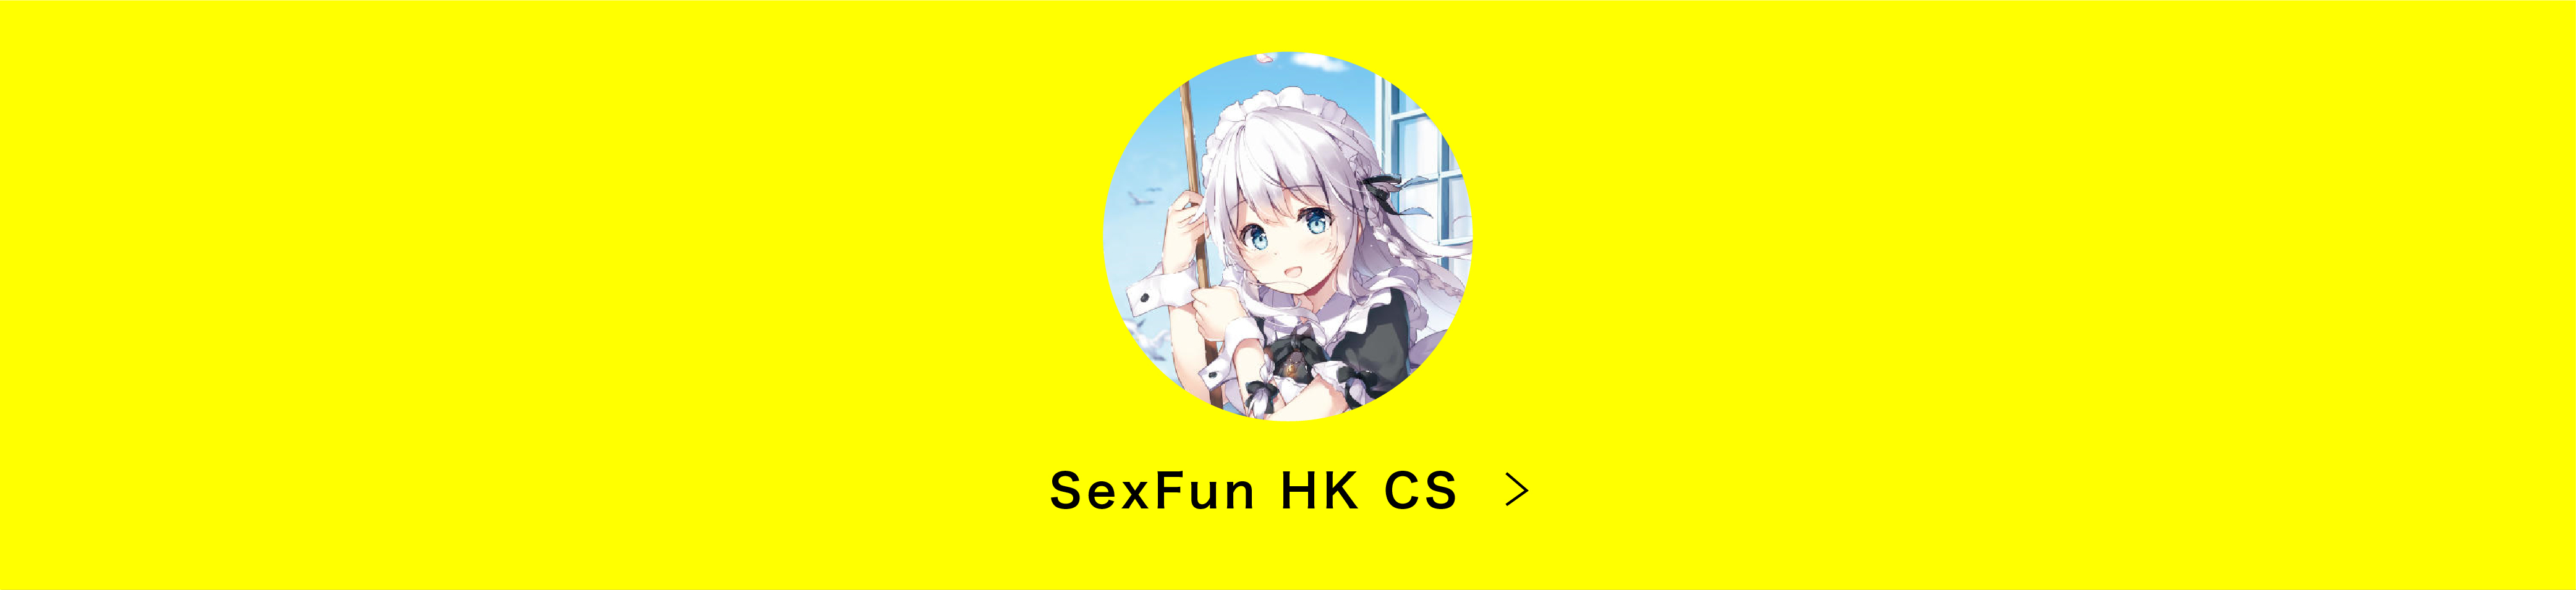 SexFun HK CS